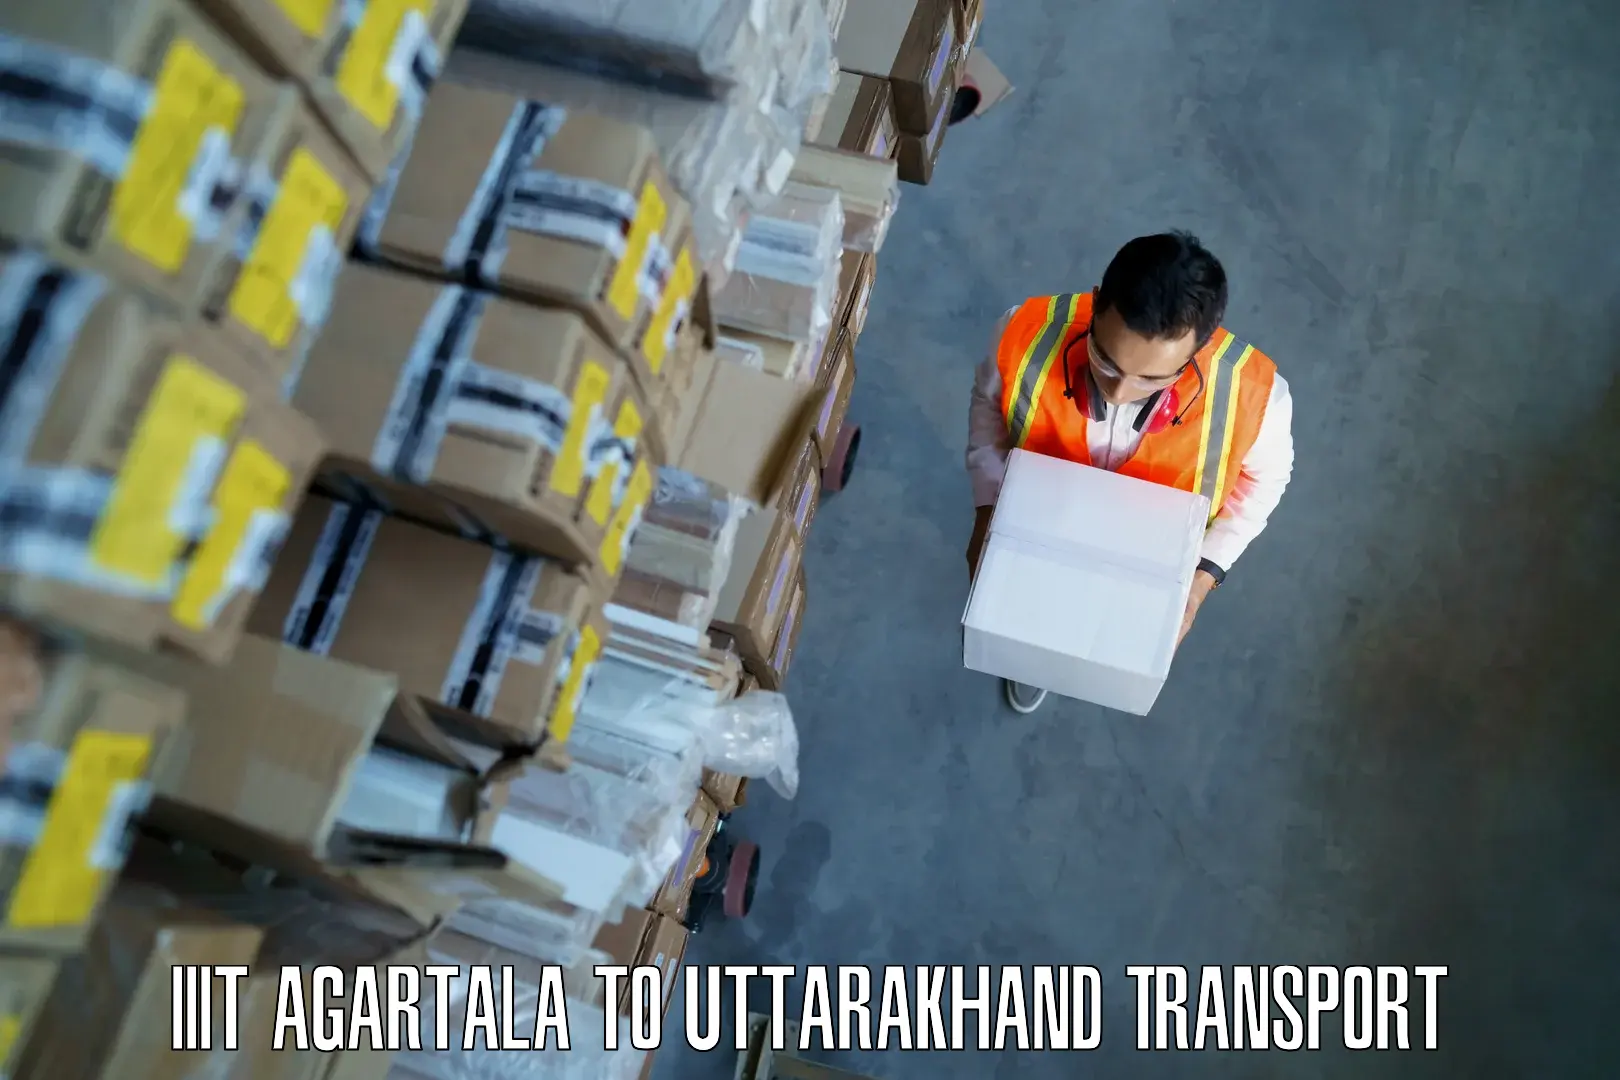 Air cargo transport services IIIT Agartala to Uttarakhand